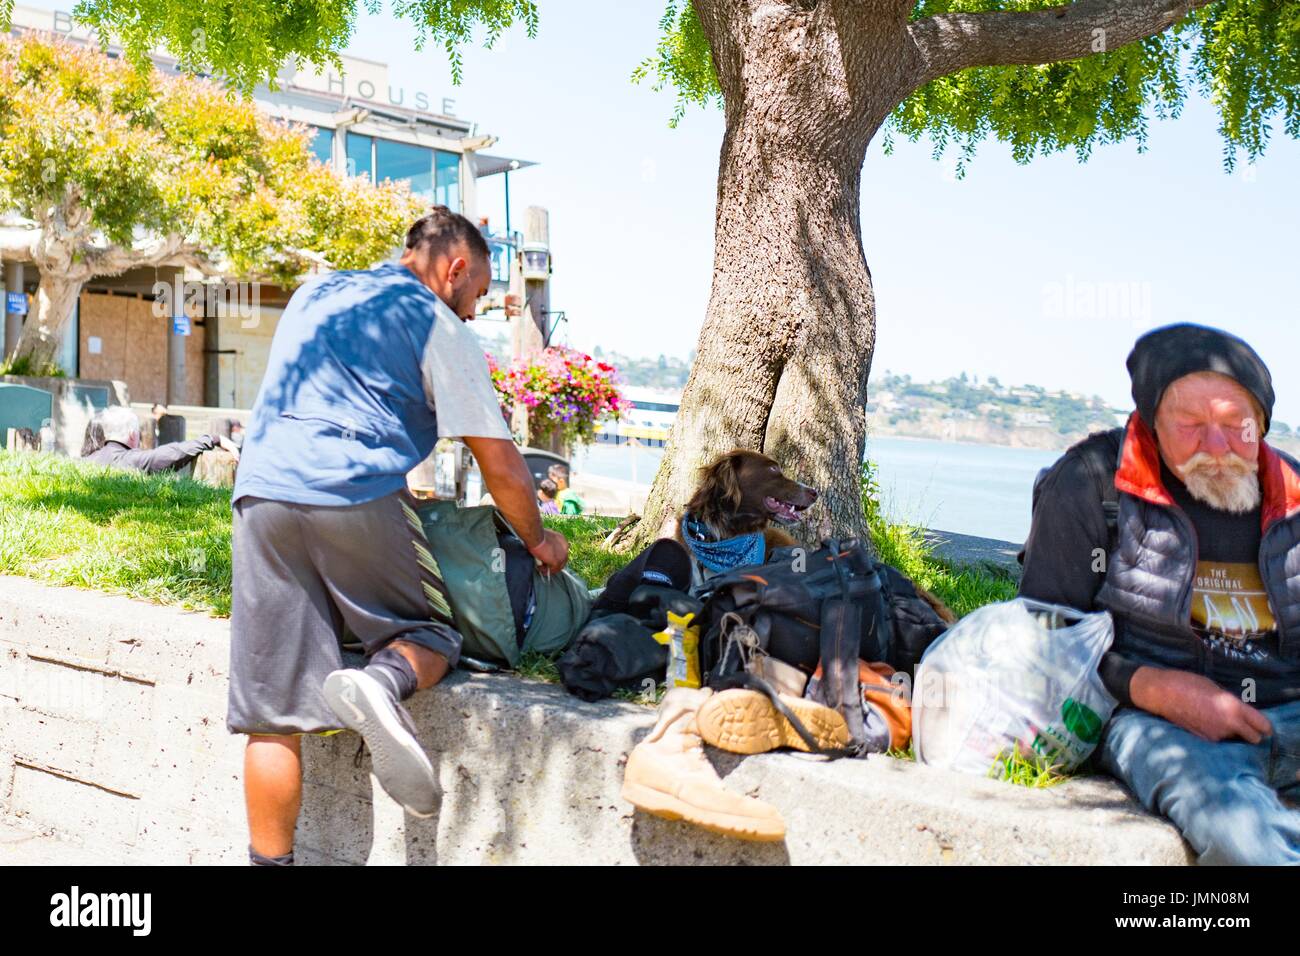 Un sans-abri et d'un voyageur avec un chien assis dans Yee Tock Chee park sur Bridgeway Road dans la baie de San Francisco ville de Sausalito, Californie, le 29 juin 2017. Banque D'Images